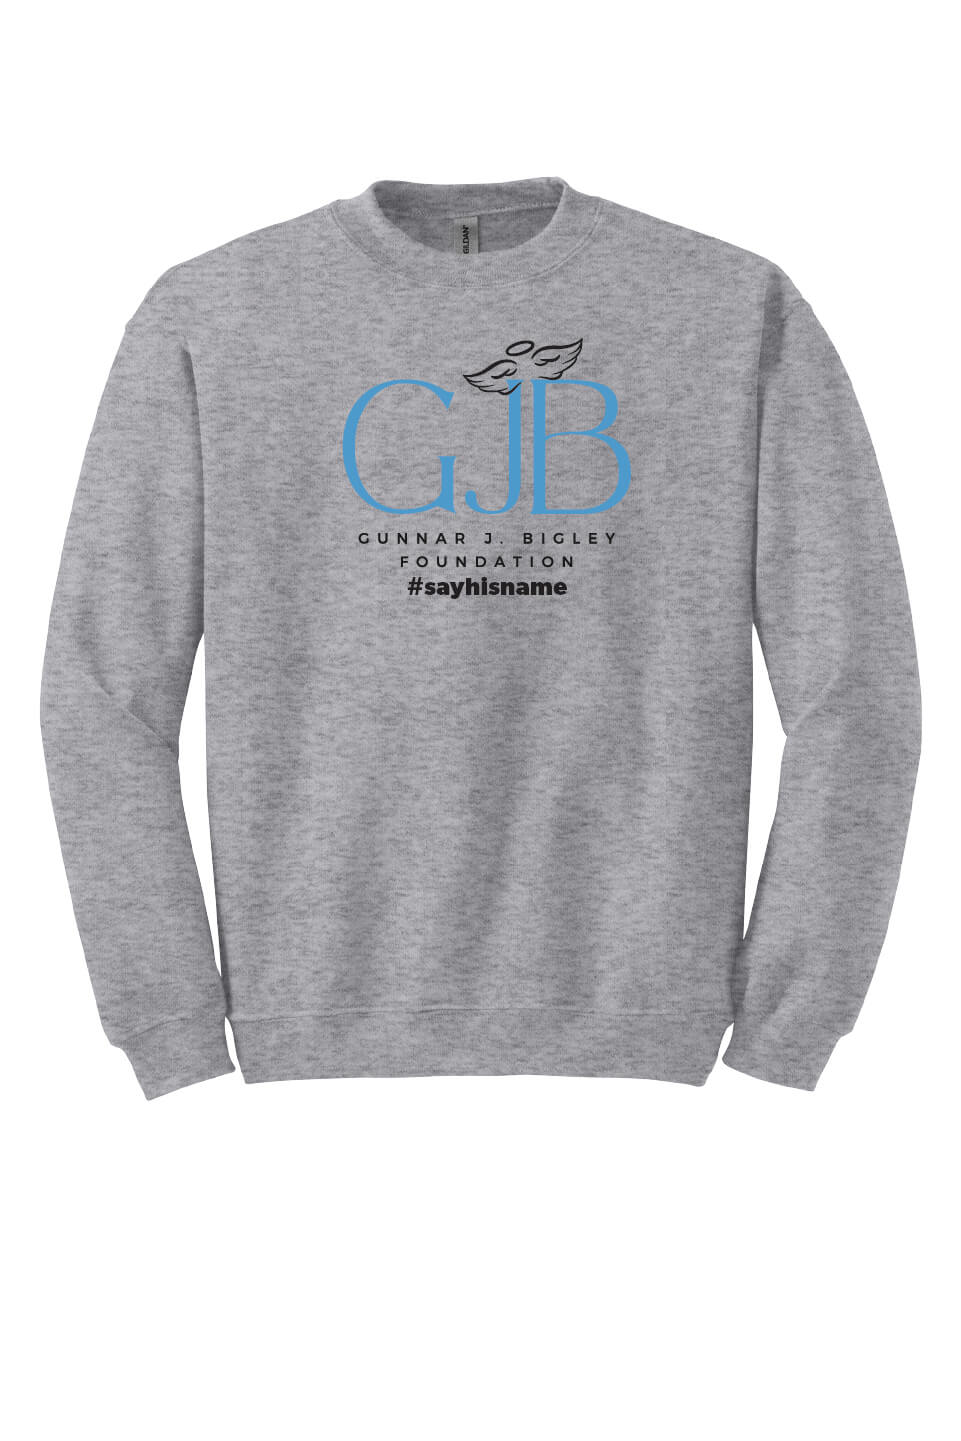 Crewneck Sweatshirt (Youth) - Word Art II gray front